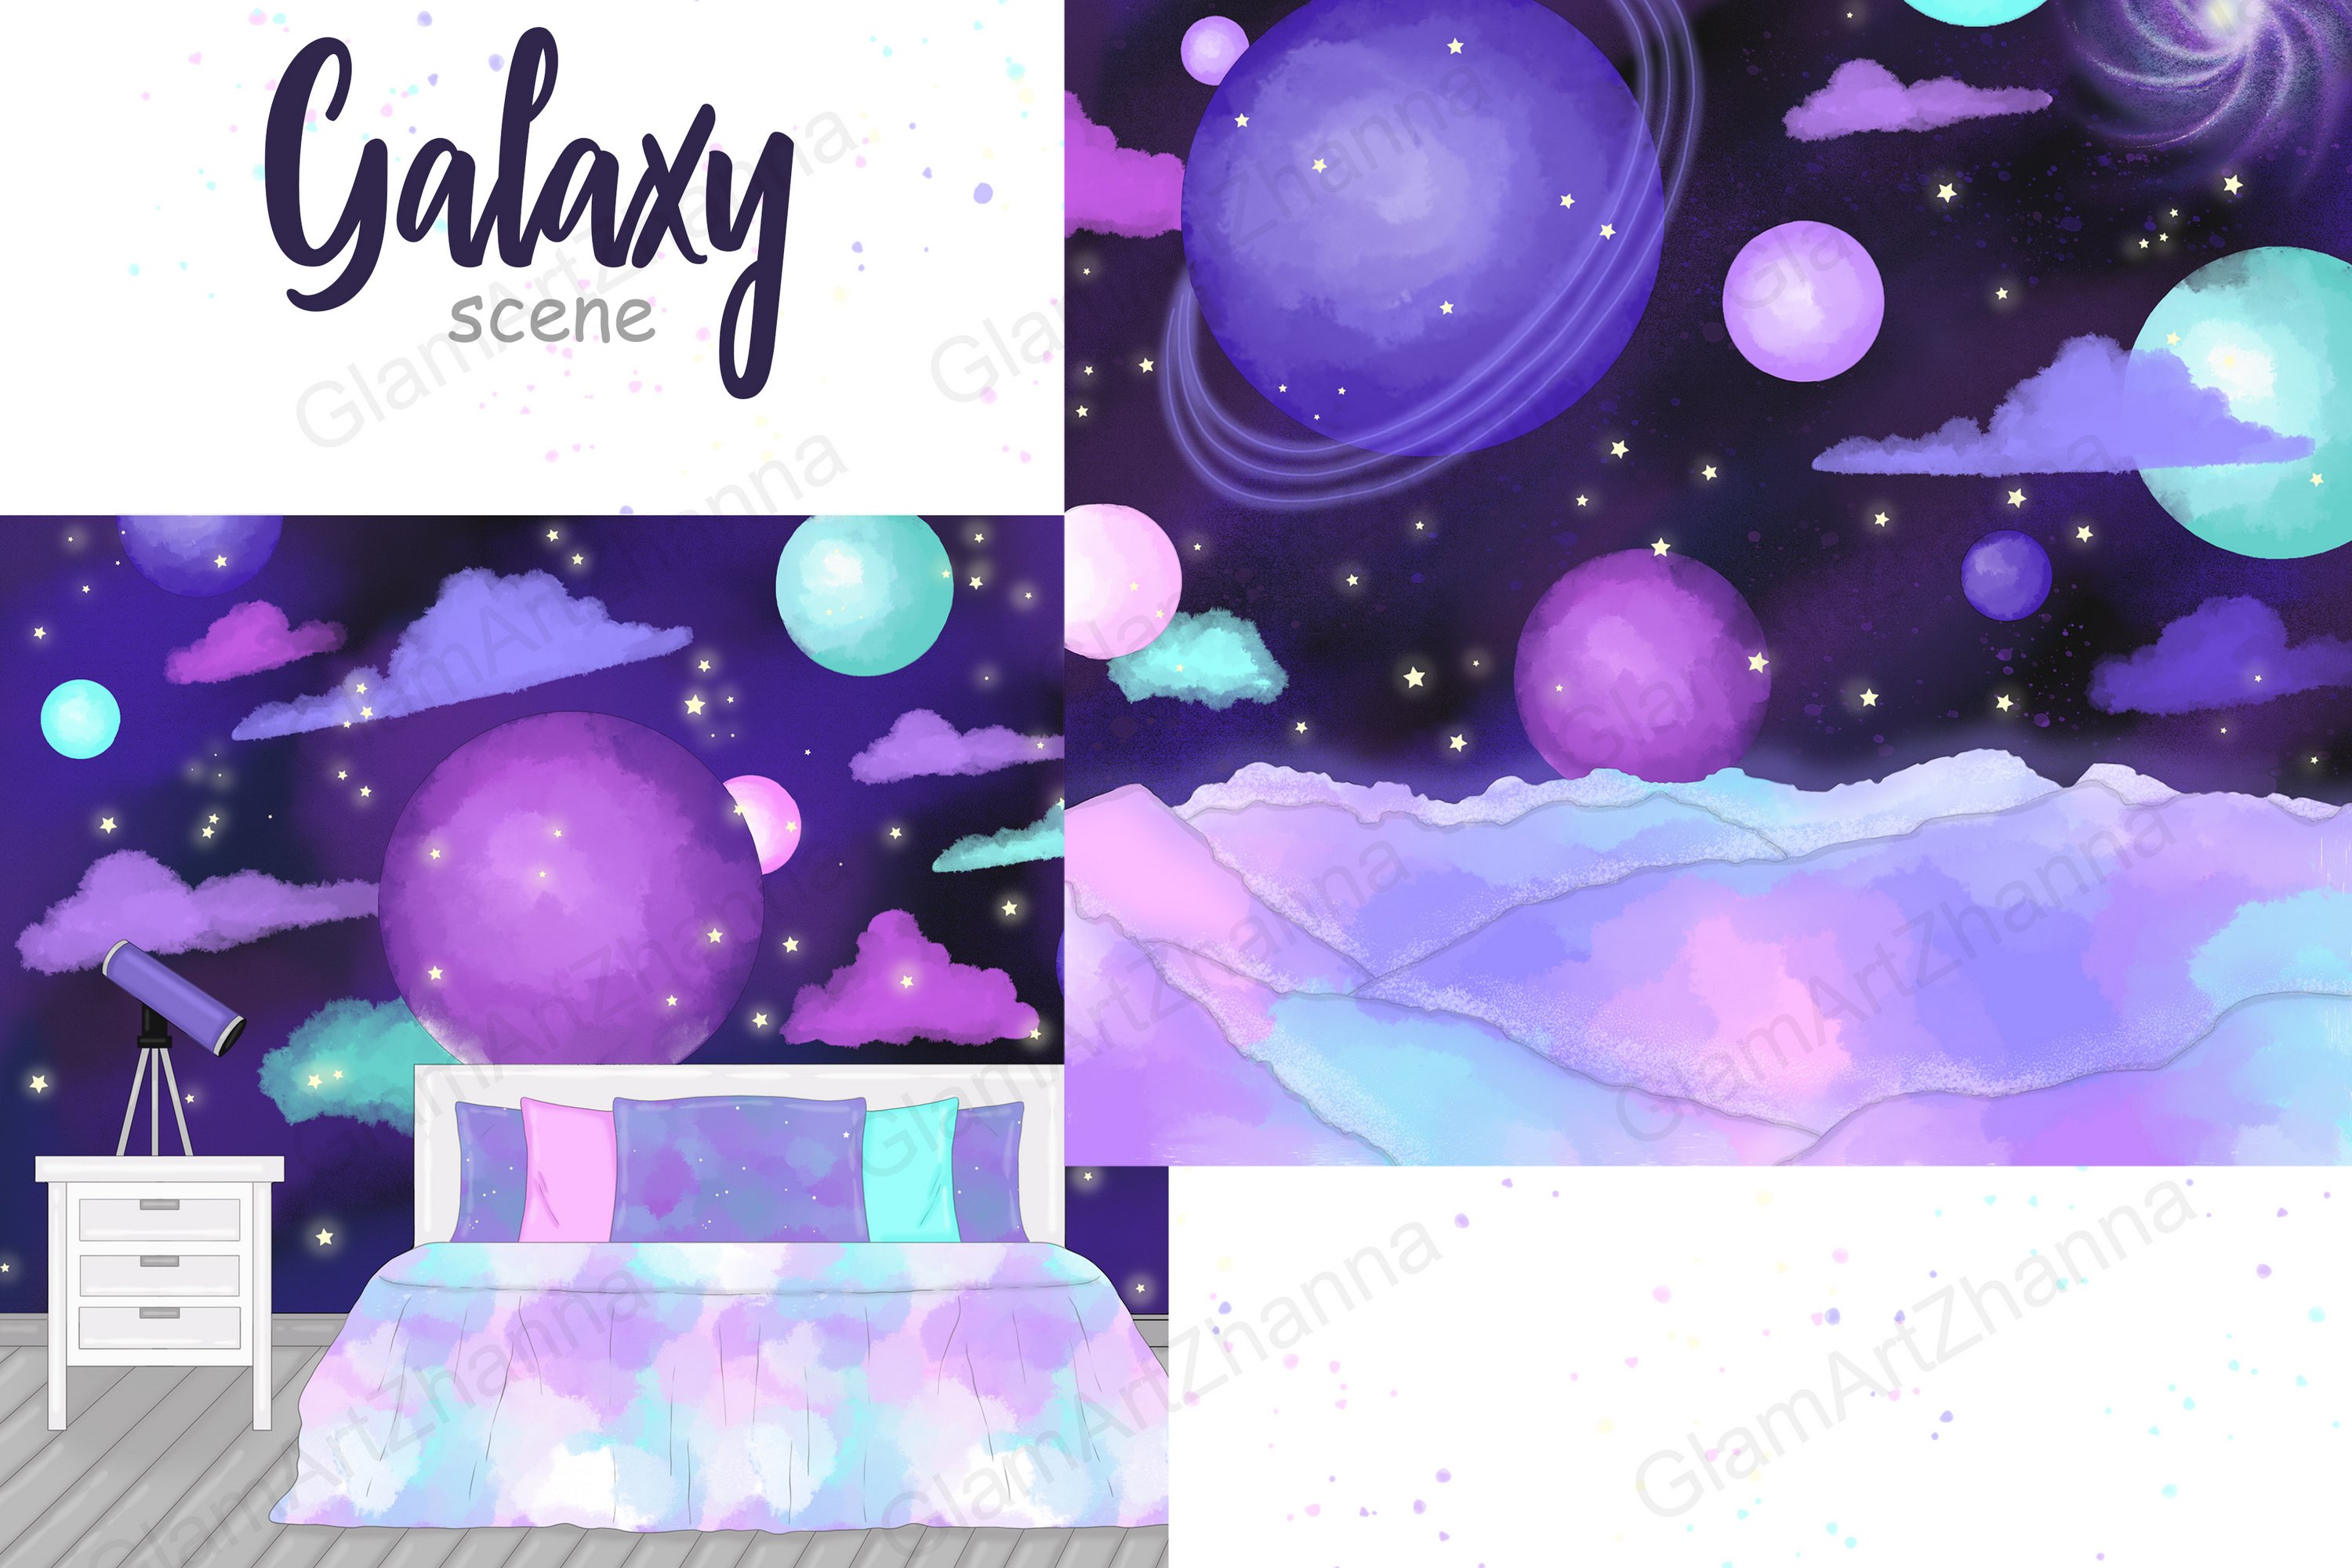 Galaxy Scene cover image.